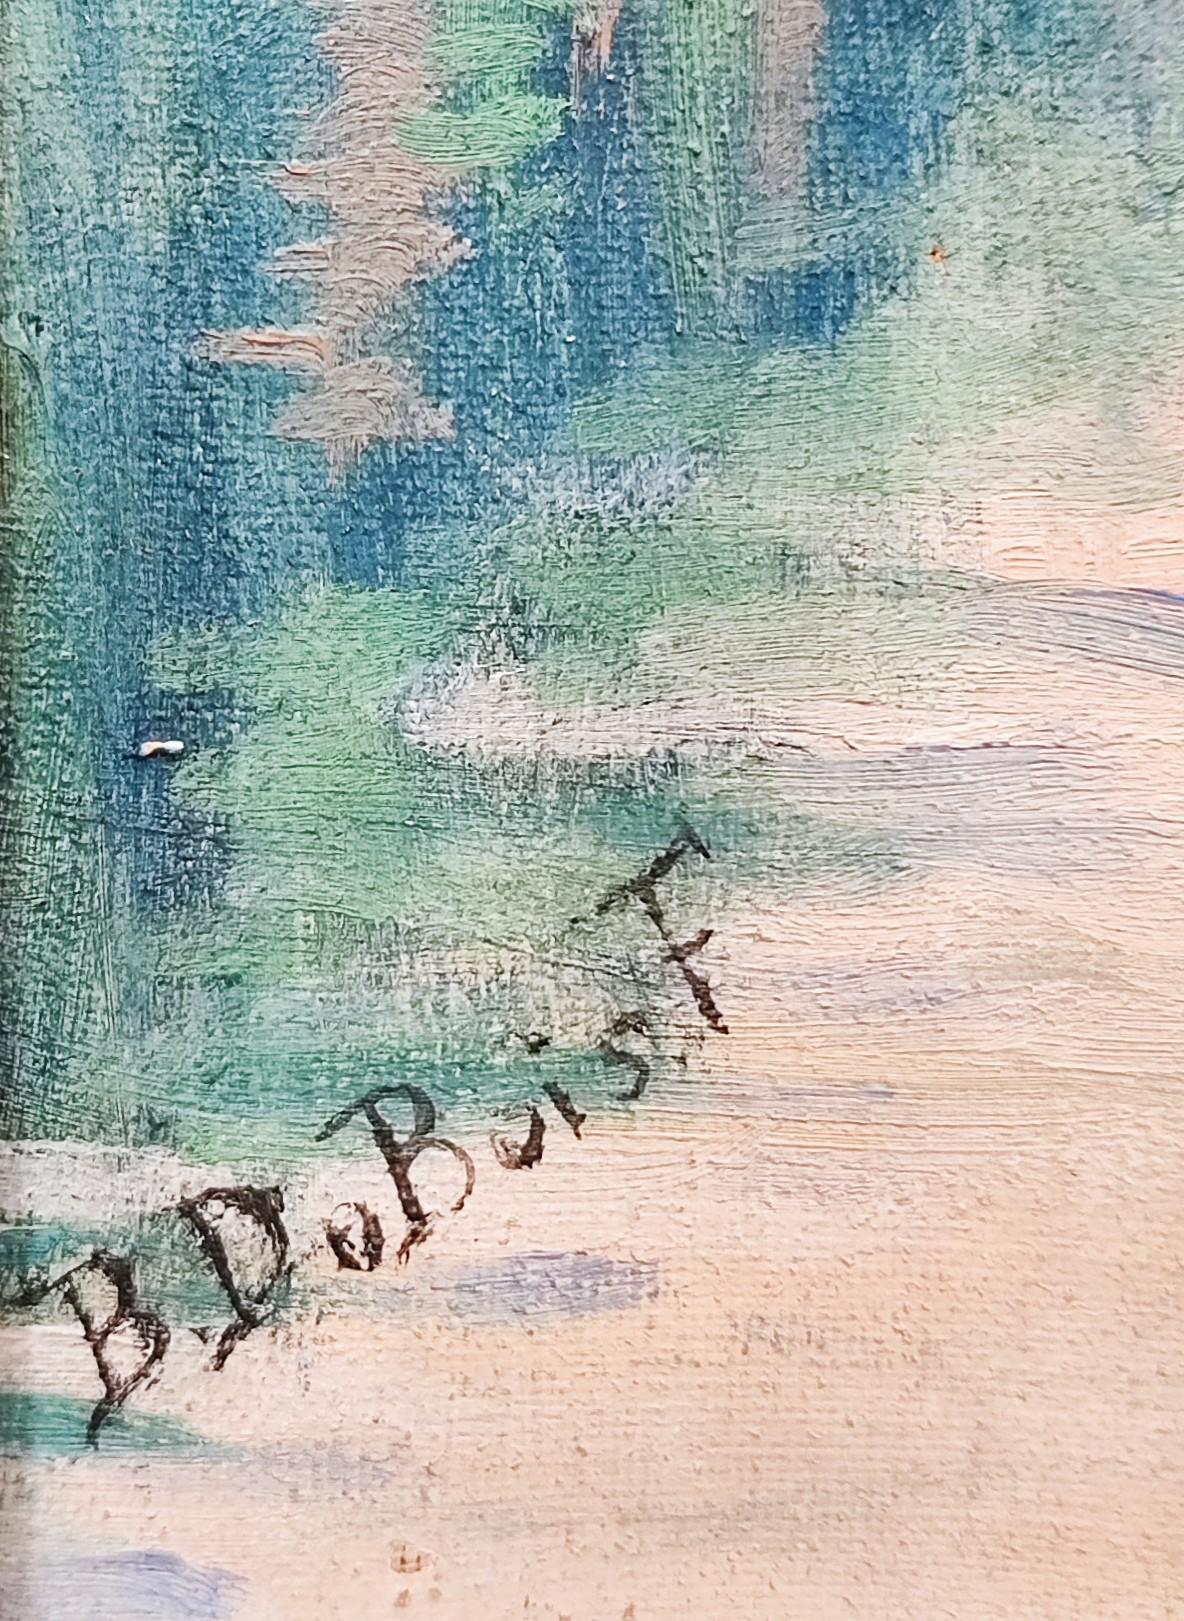 Landscape lake and mountain face - Blue Landscape Painting by Berthe Du Bois-Favre